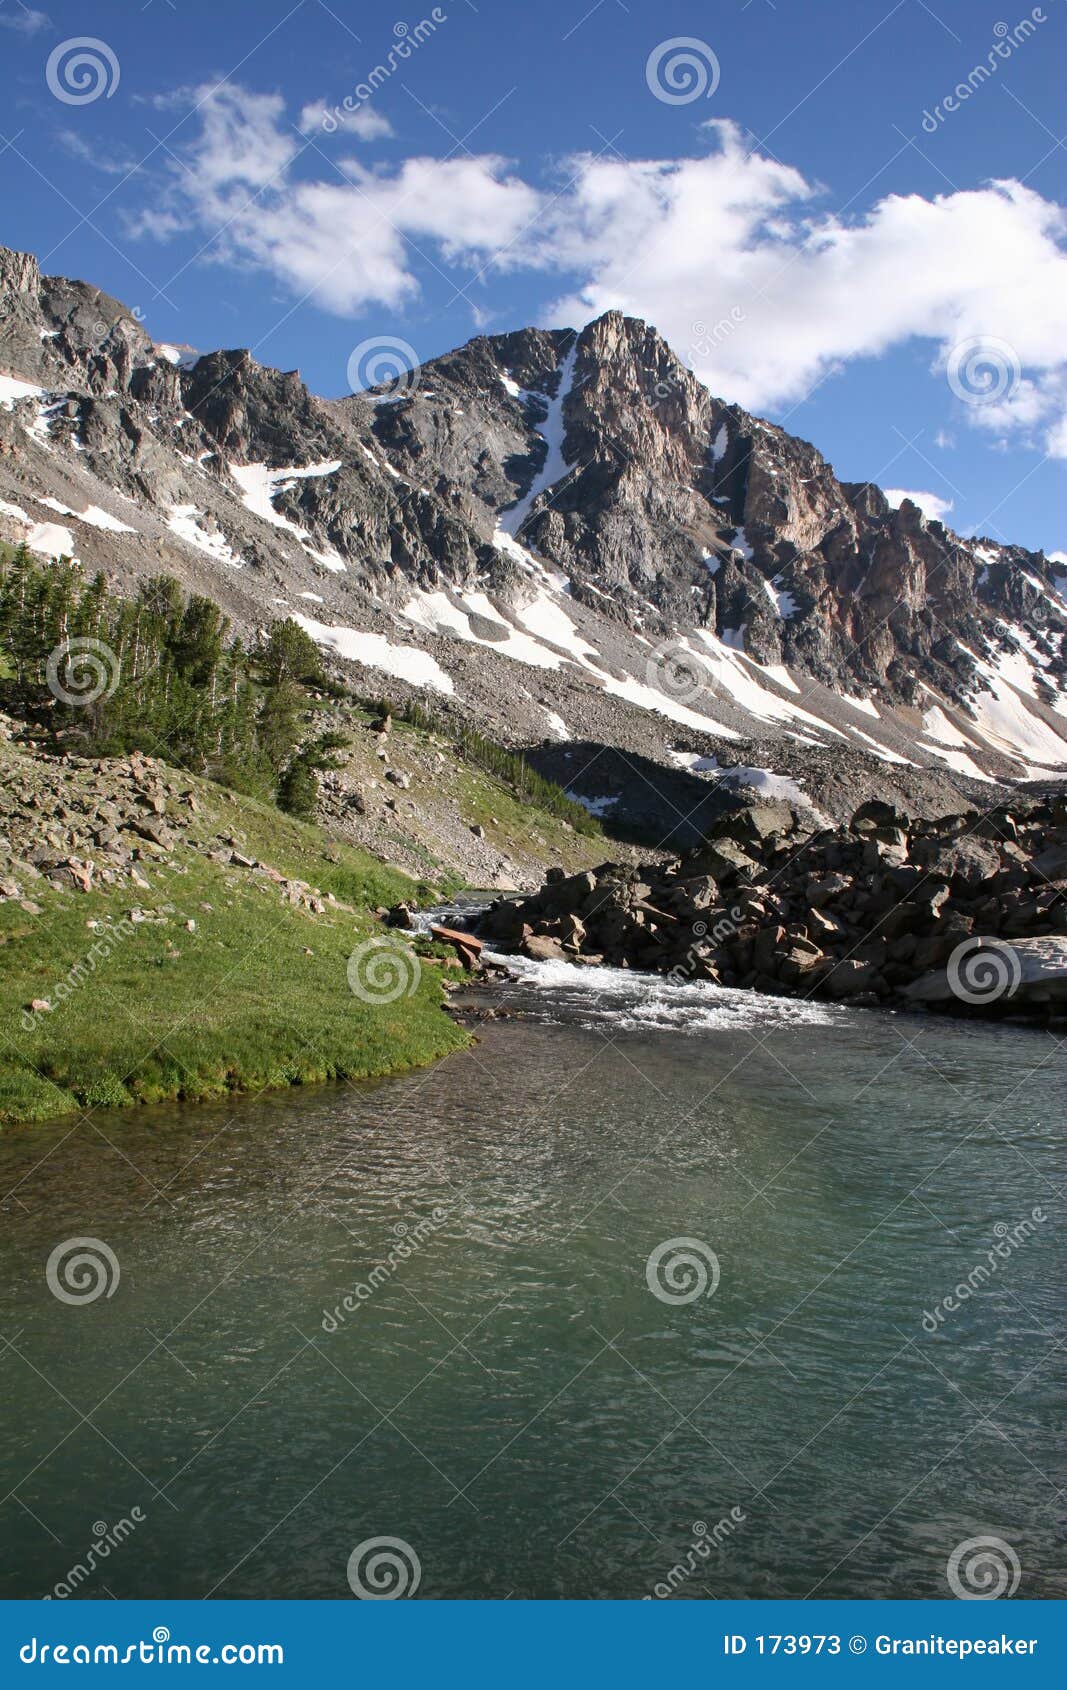 whitetail peak - montana